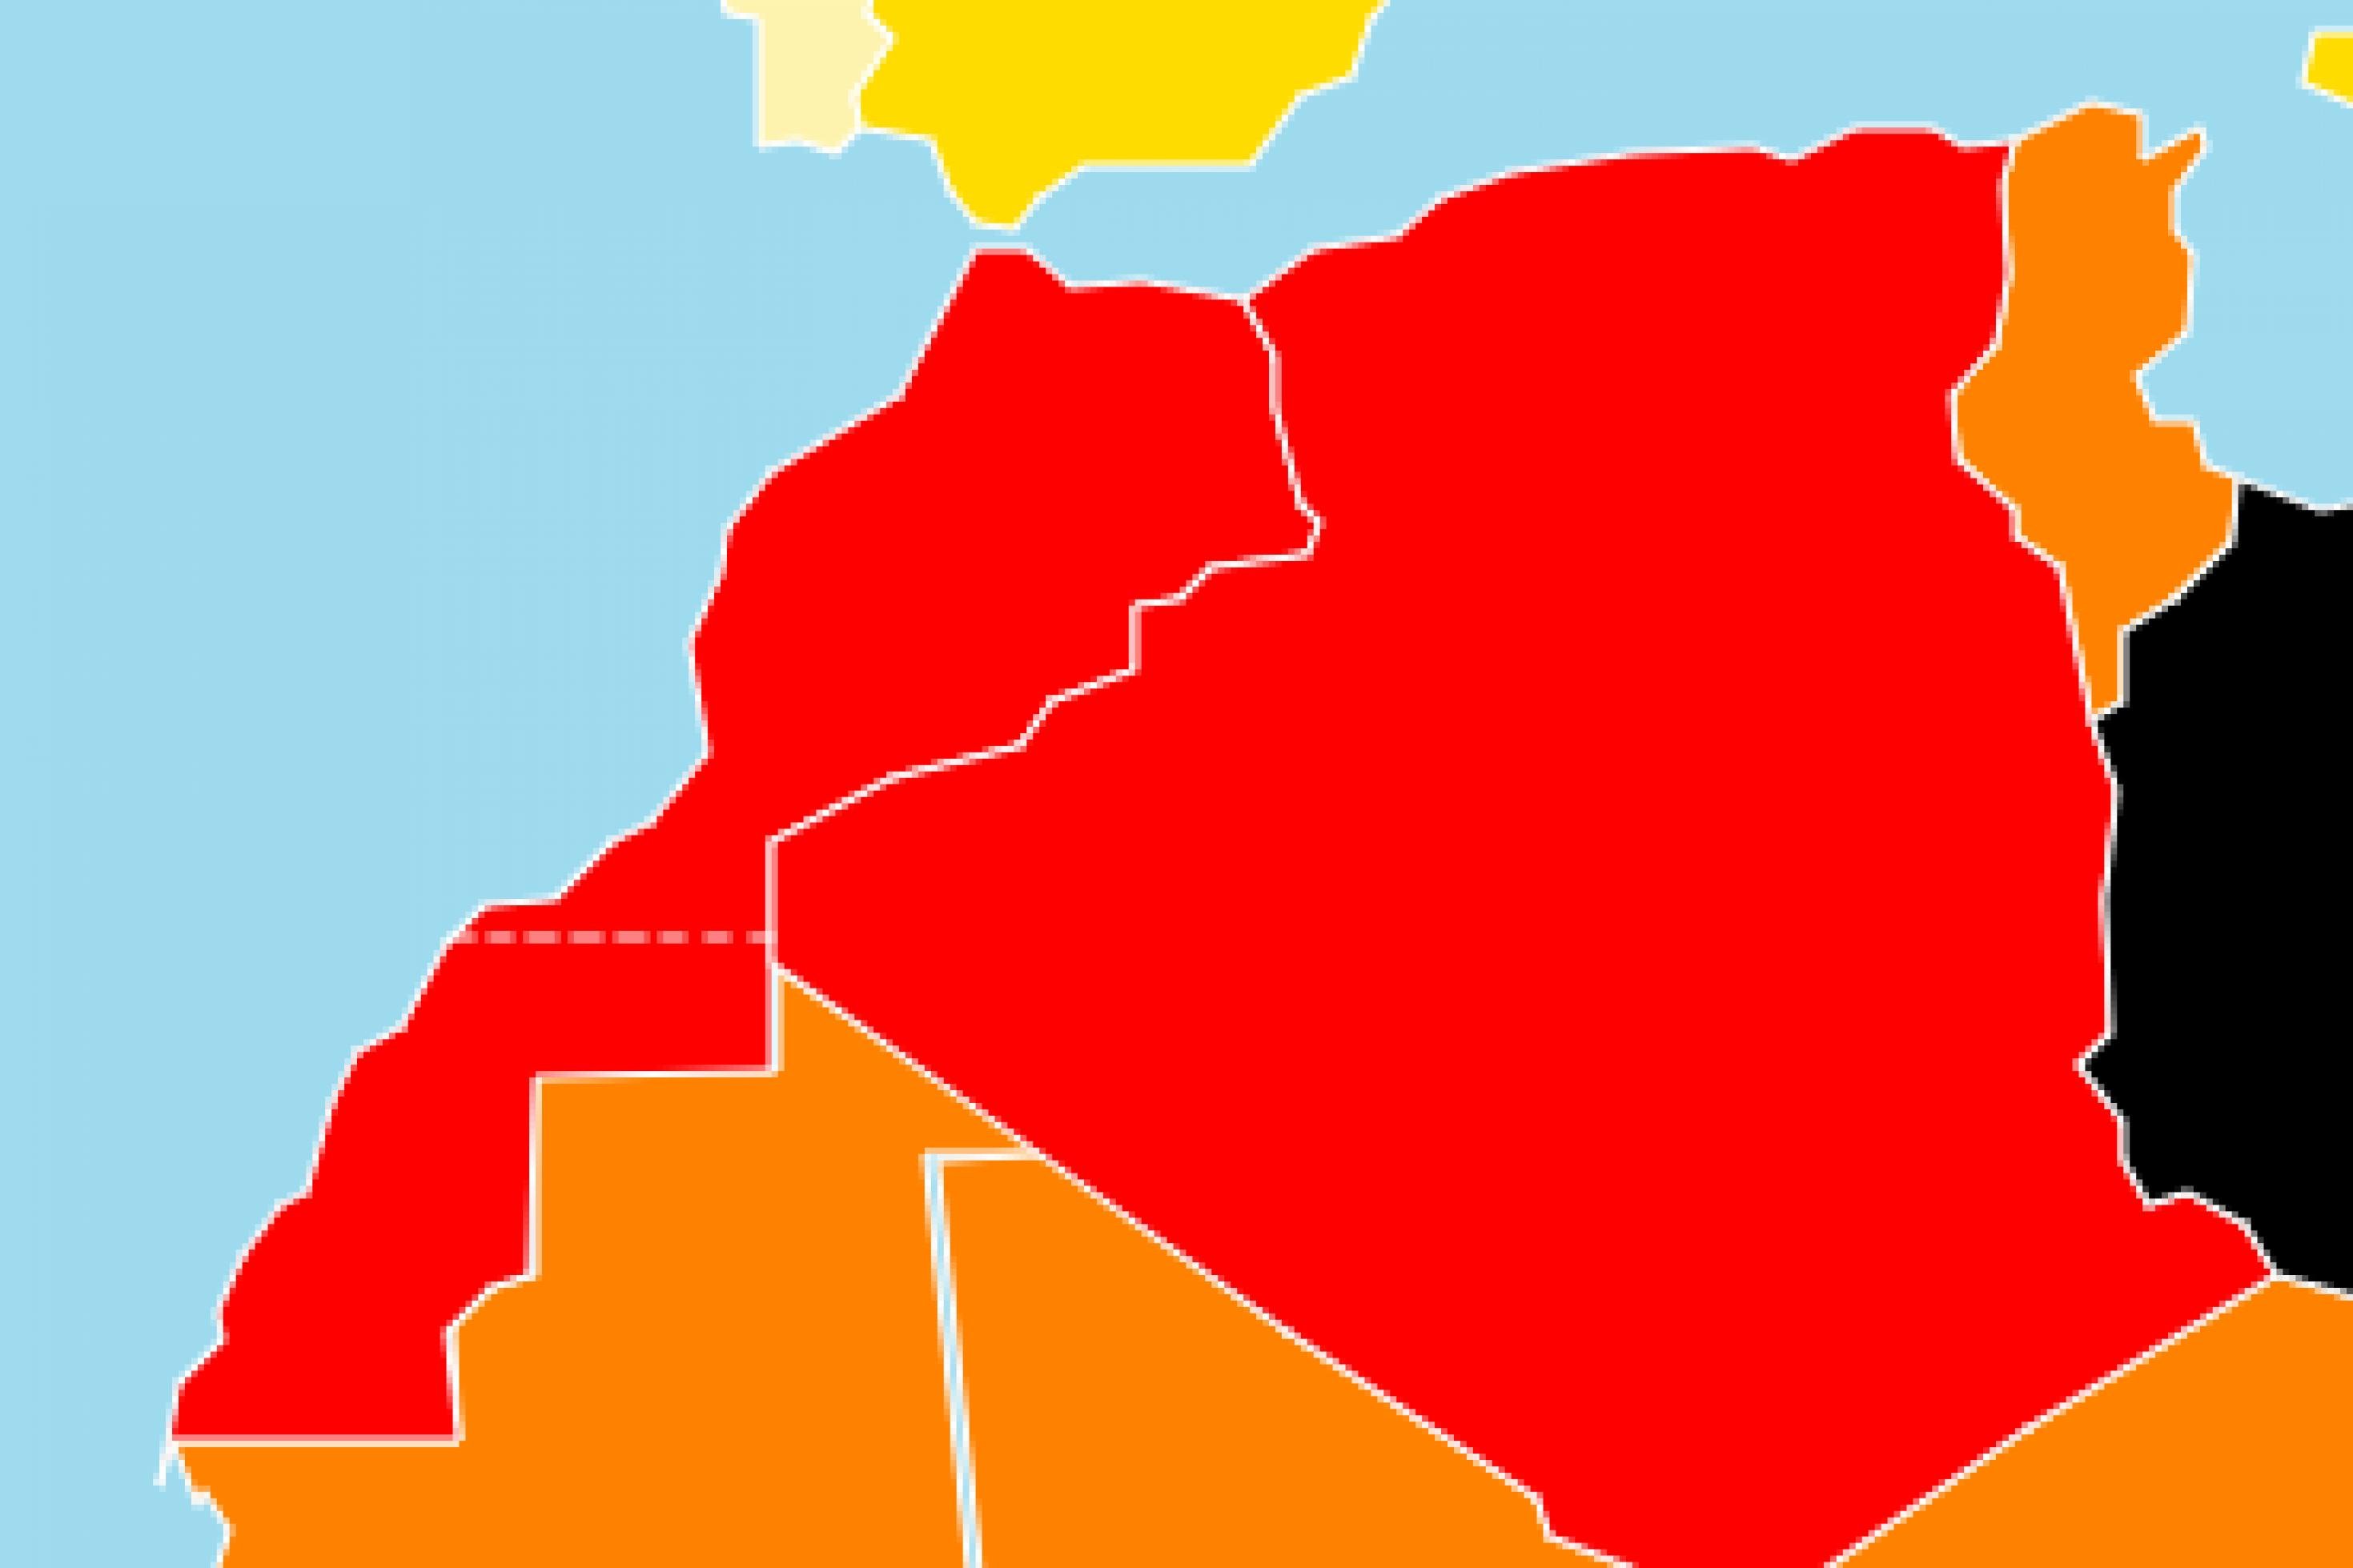 Ausschnitt aus der Karte des Rankings von Reporter ohne Grenzen. Marokko und Algerien sind rot, Tunesien orange.